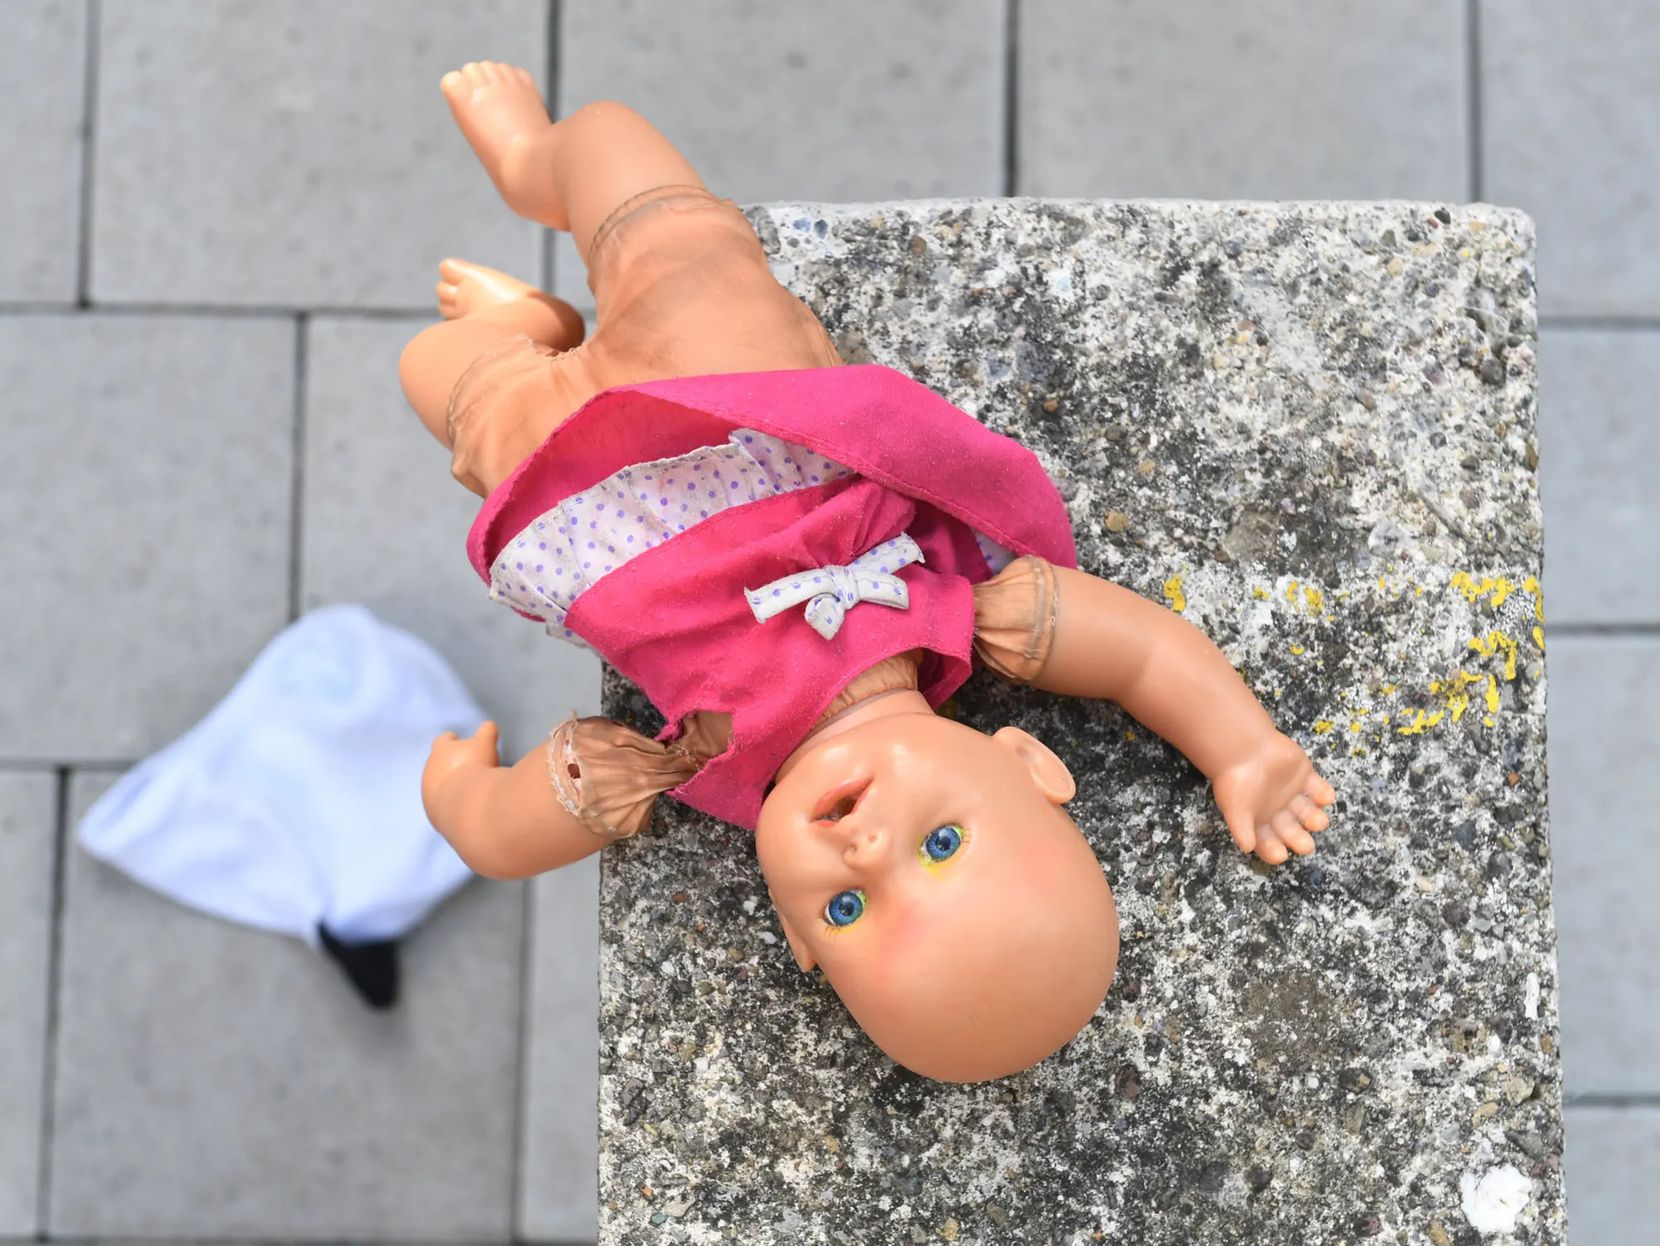 Puppe liegt auf dem Boden.